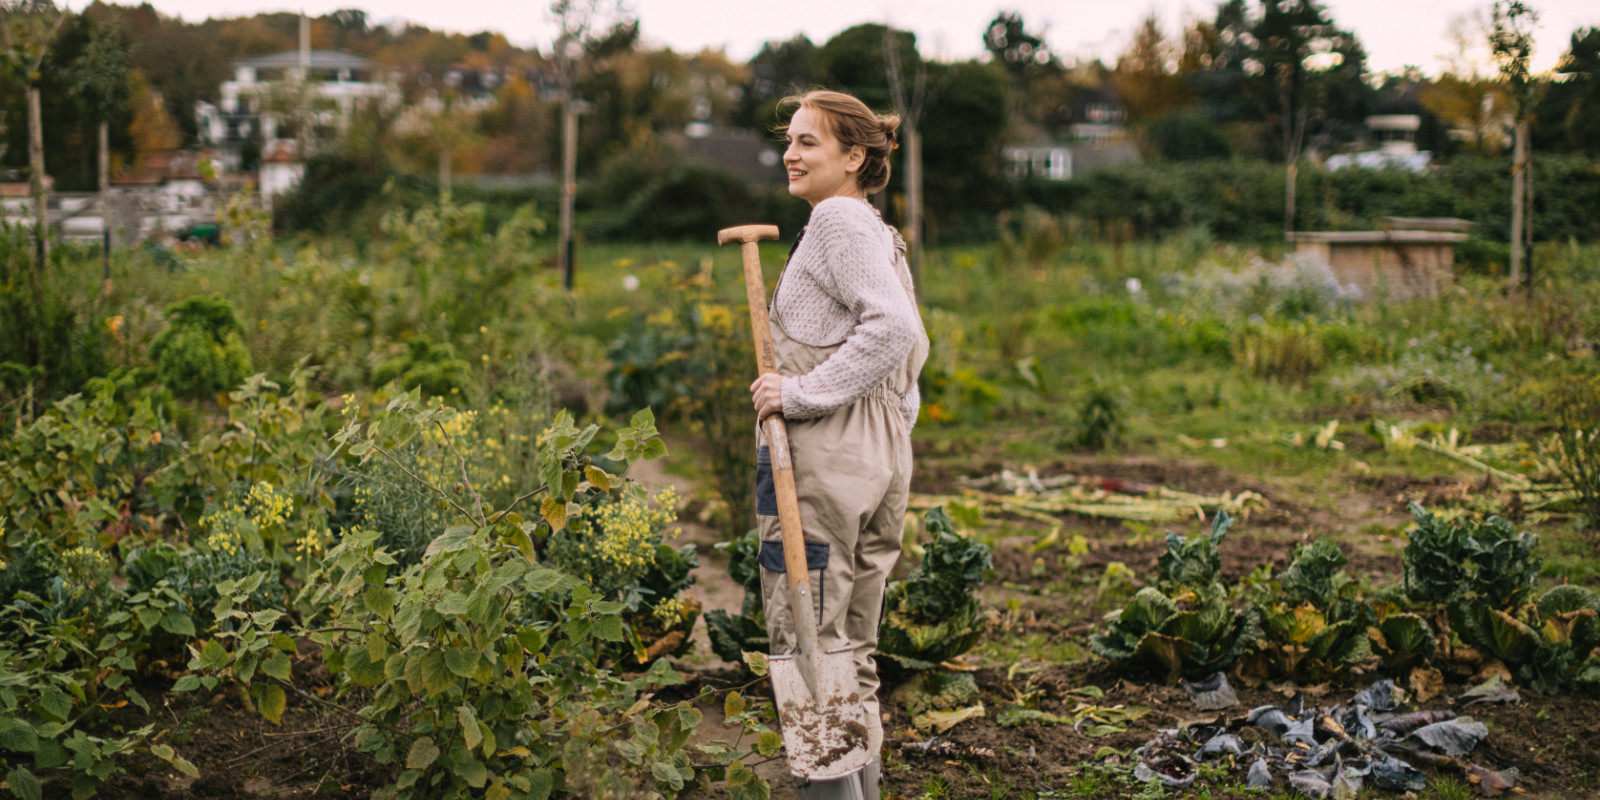 Zurück zu den Wurzeln: Kann Gartenarbeit unsere Stimmung heben?